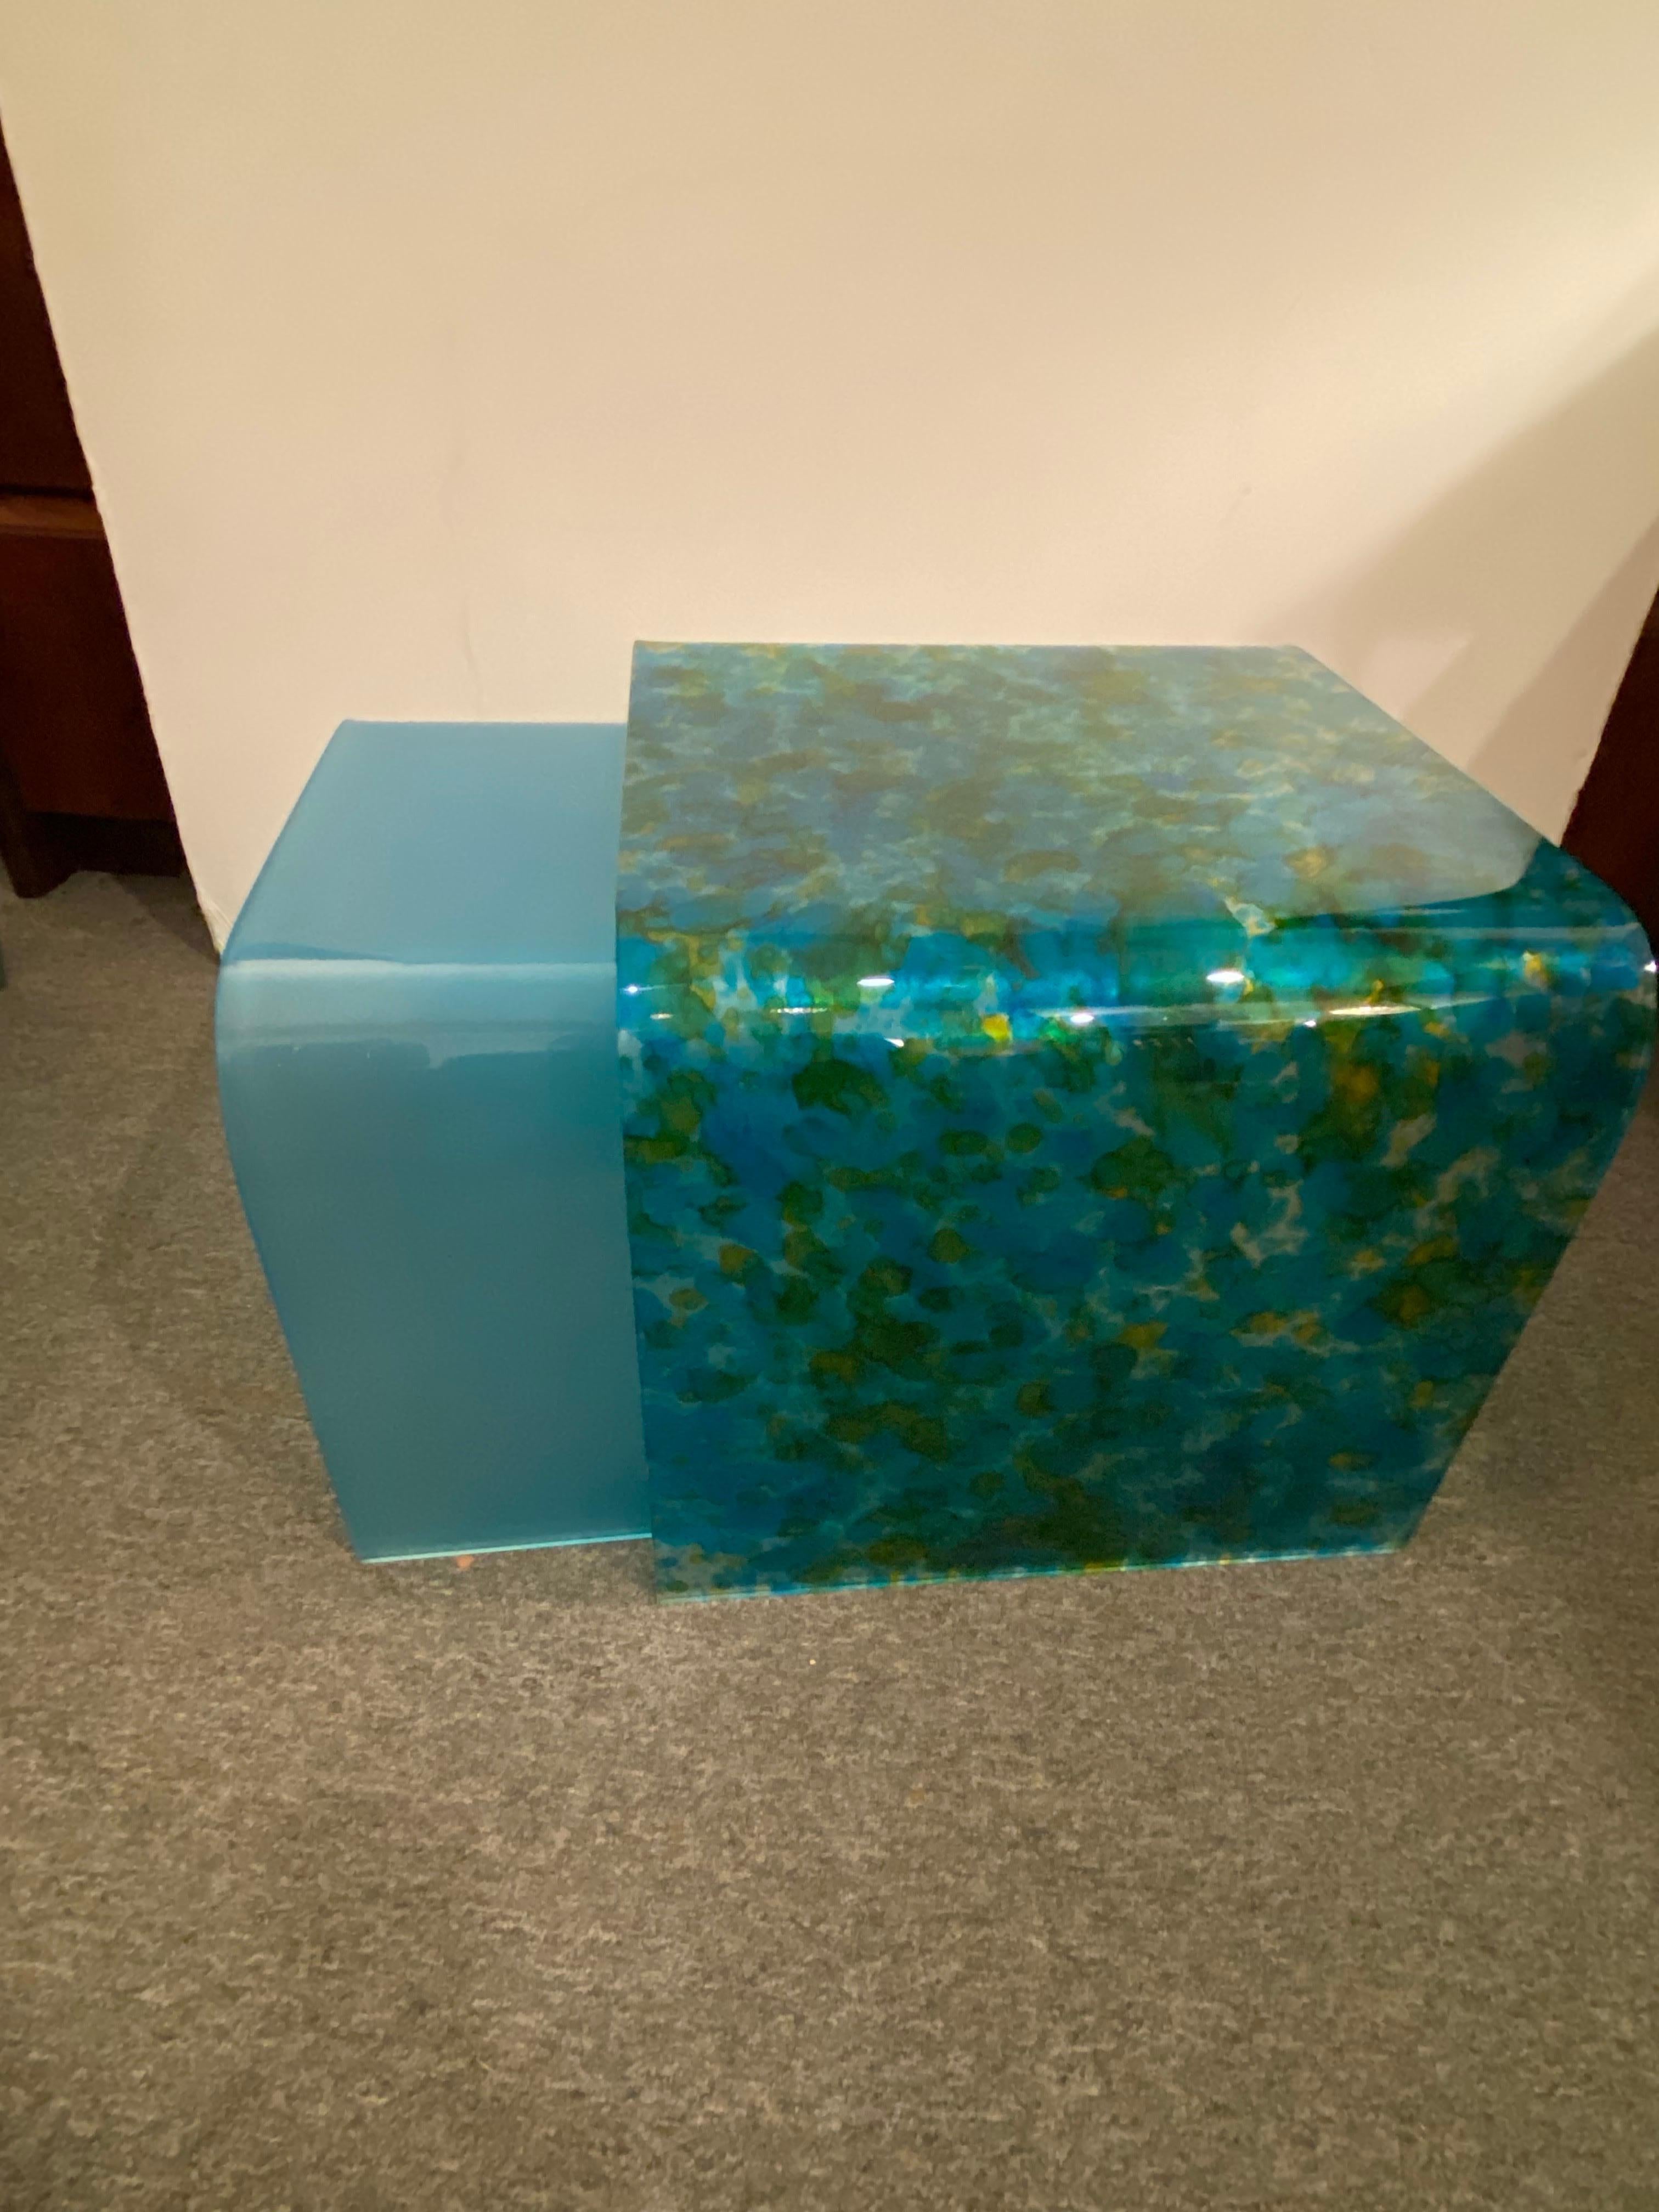 Ein Paar Nesiting-Tische aus Glas im Stil von Angelo Cortesi.  Ungewöhnlich mit einem gesprenkelten blauen Muster auf dem größeren Exemplar. Der kleinere ist einfarbig blau.  Perfekt für den Einsatz in vielen Bereichen!  Der kleinere blaue hat einen